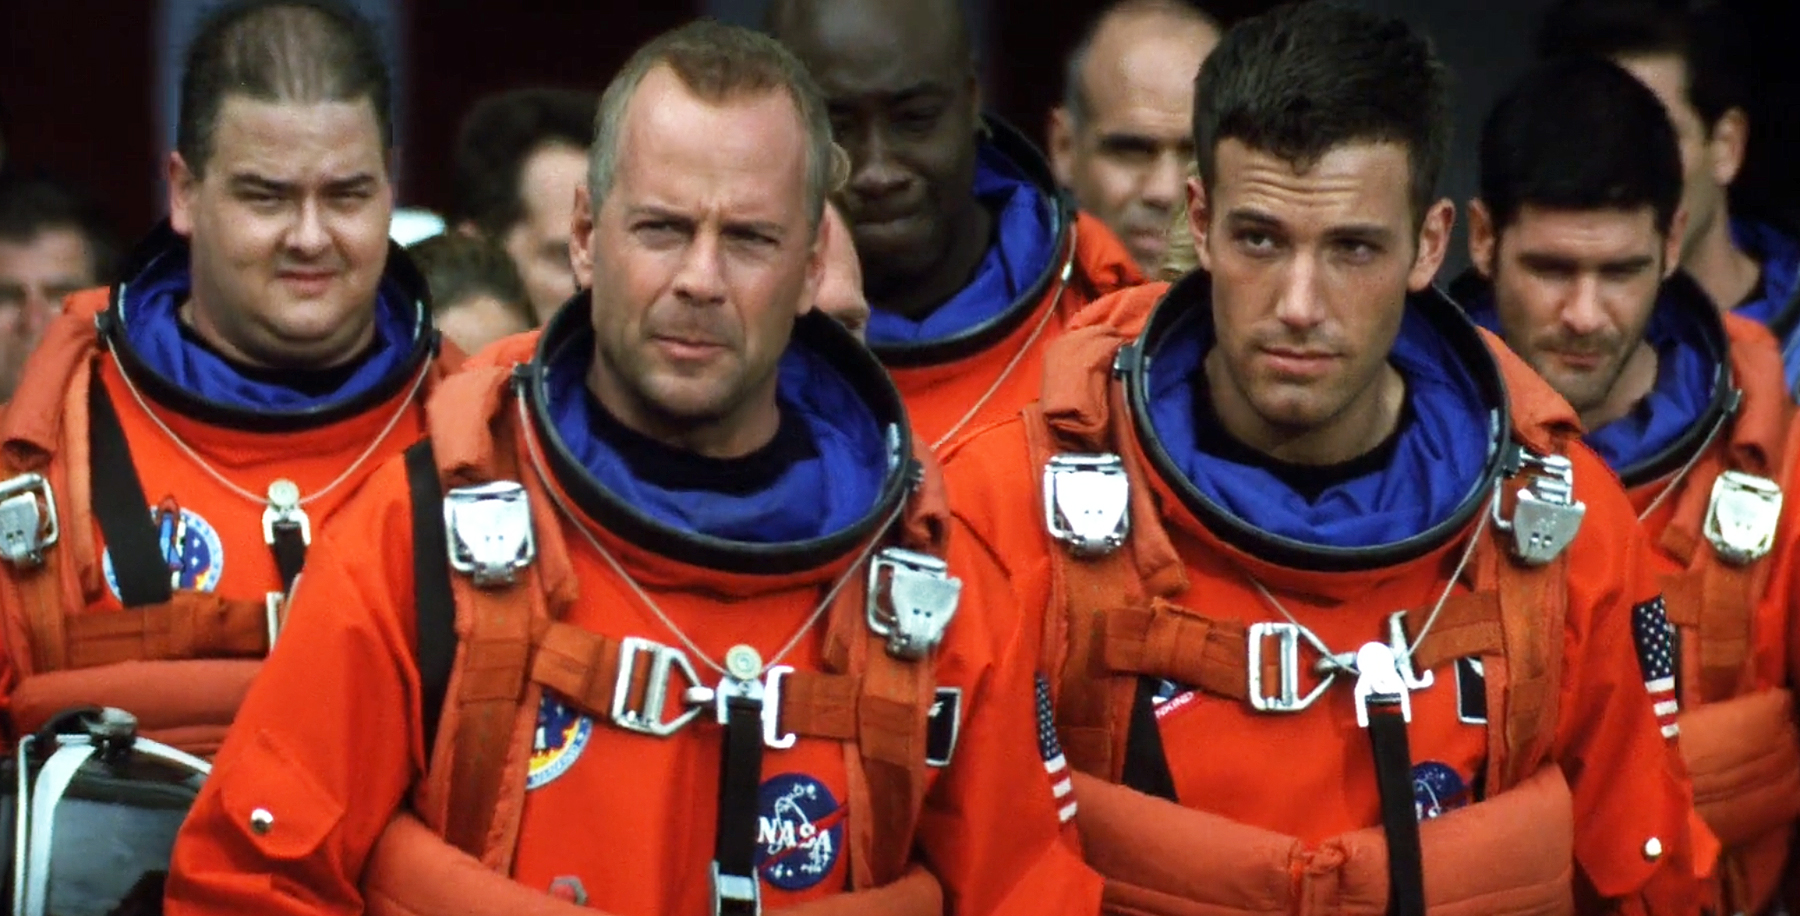 groupe d'astronautes du film armageddon